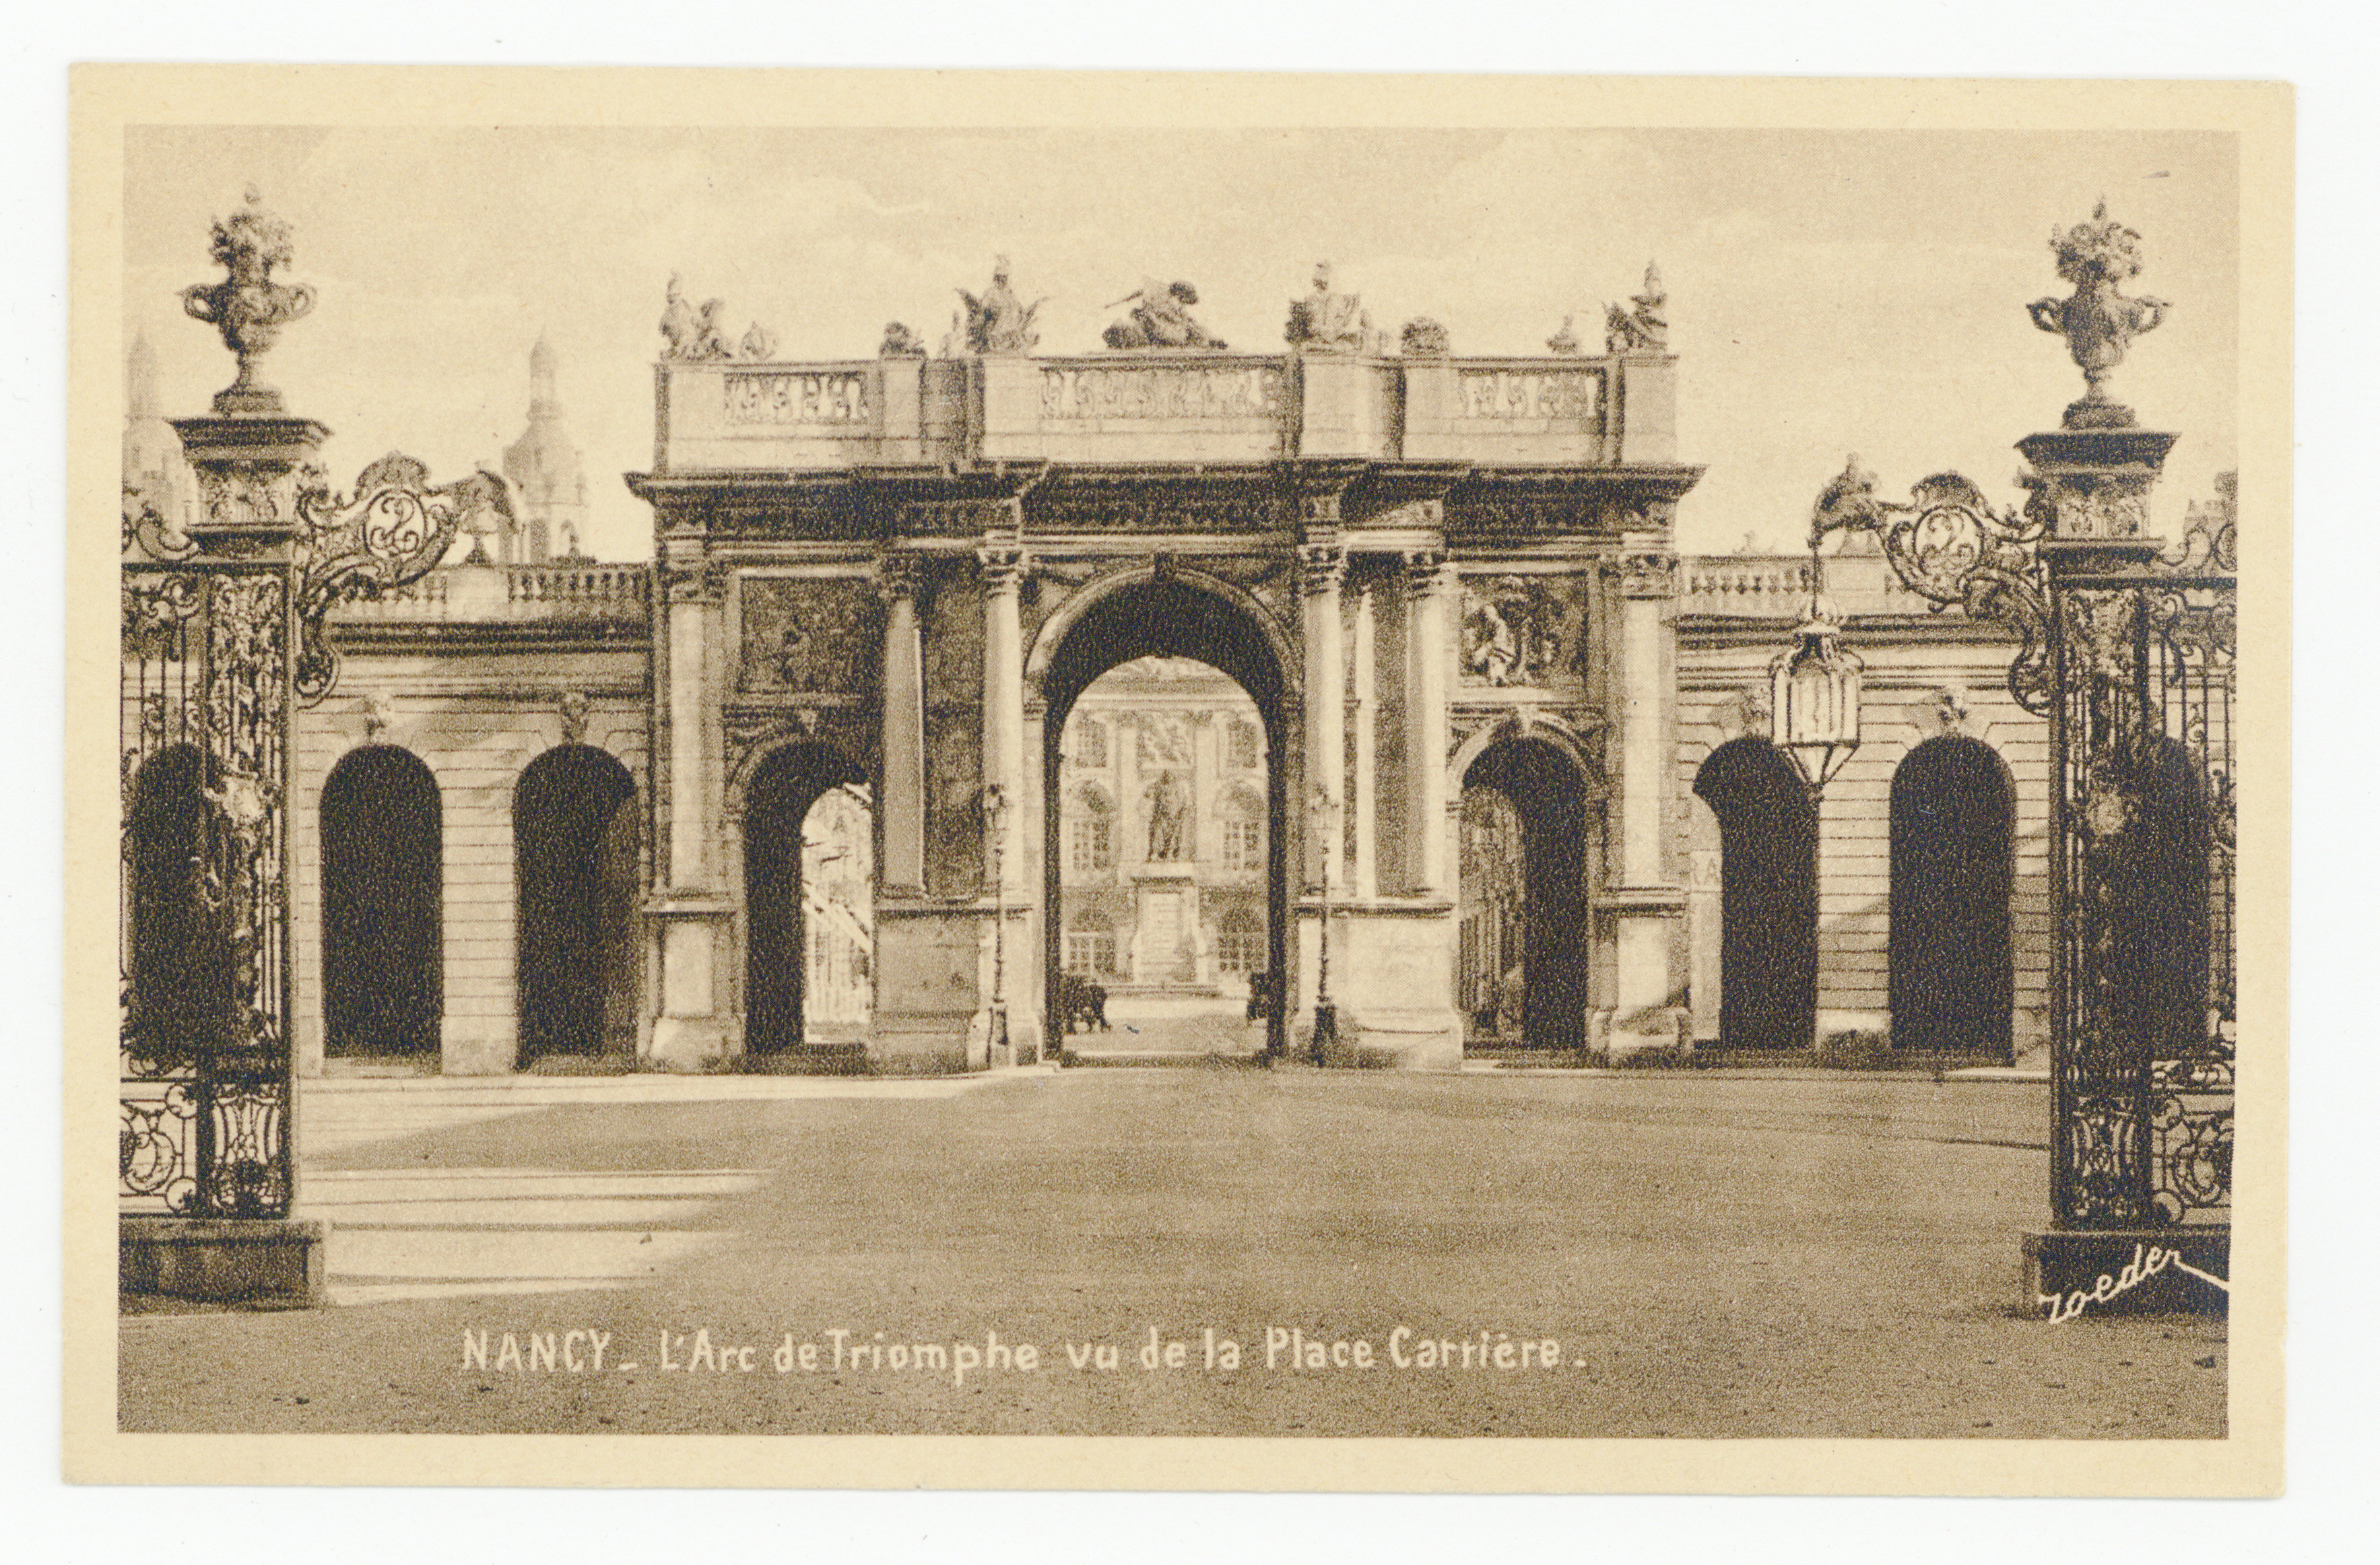 Contenu du Nancy : l'Arc de Triomphe vu de la place Carrière